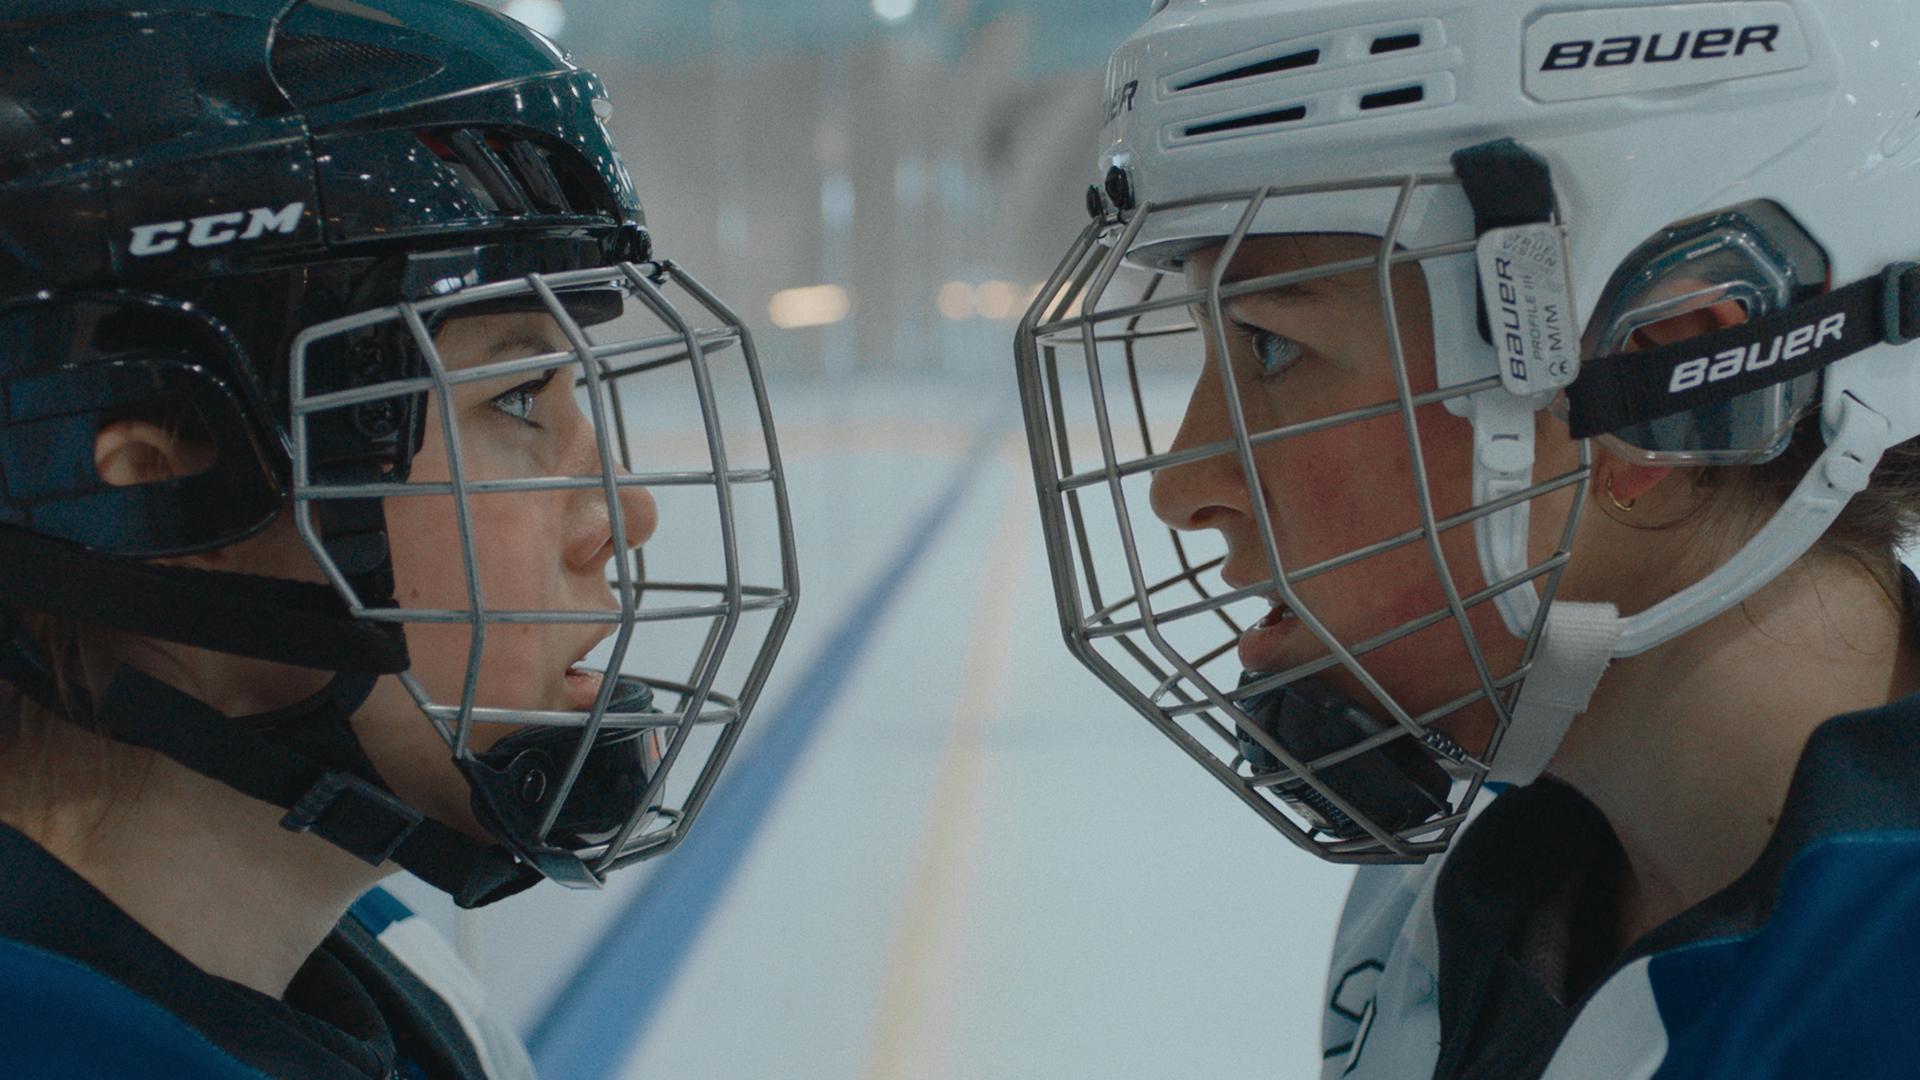 Zwei Eishockeyspielerinnen stehen sich gegenüber und fixieren einander mit Blicken.